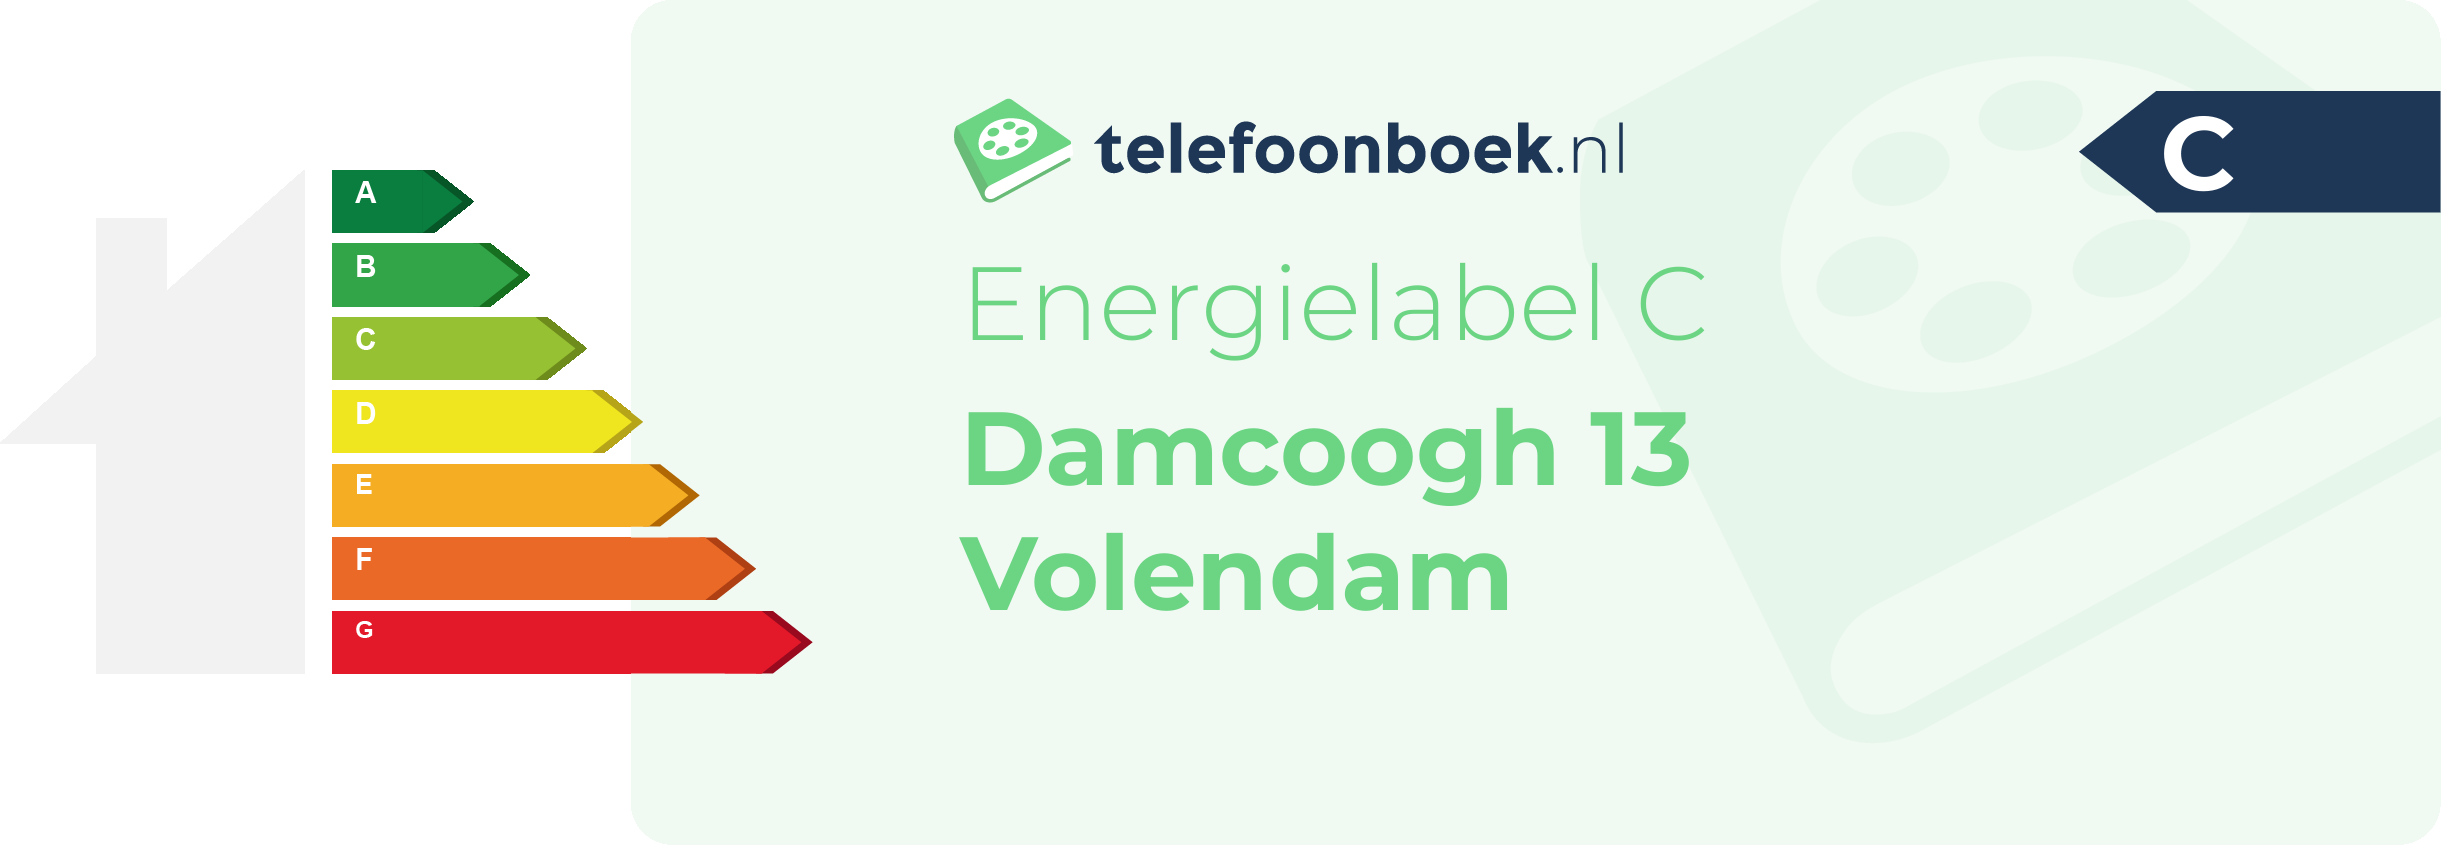 Energielabel Damcoogh 13 Volendam